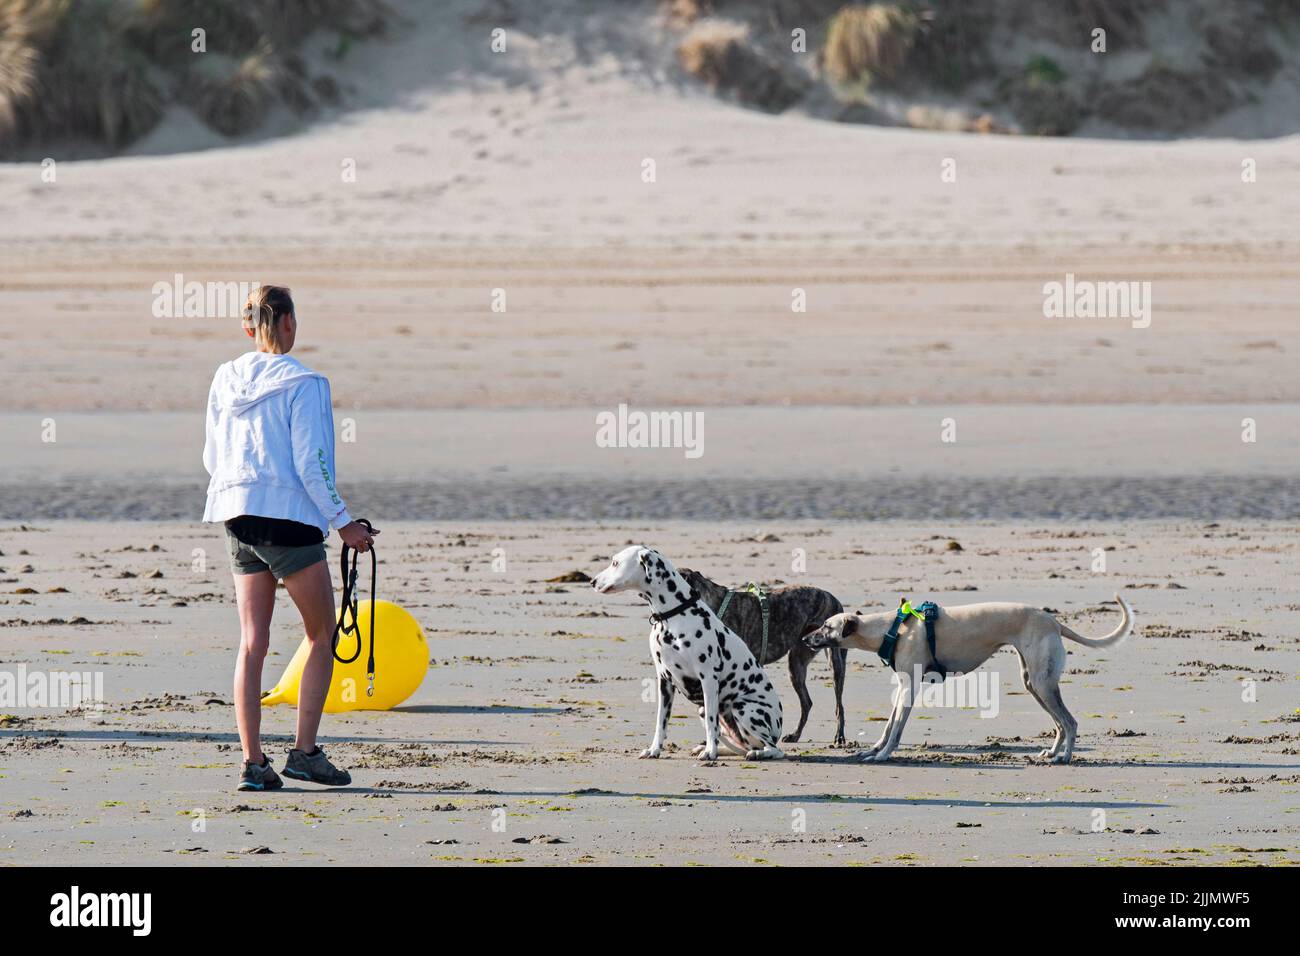 Dueña de perro que camina a lo largo de la costa con tres perros obedientes soltados / fuera de plomo en la playa de arena en verano Foto de stock